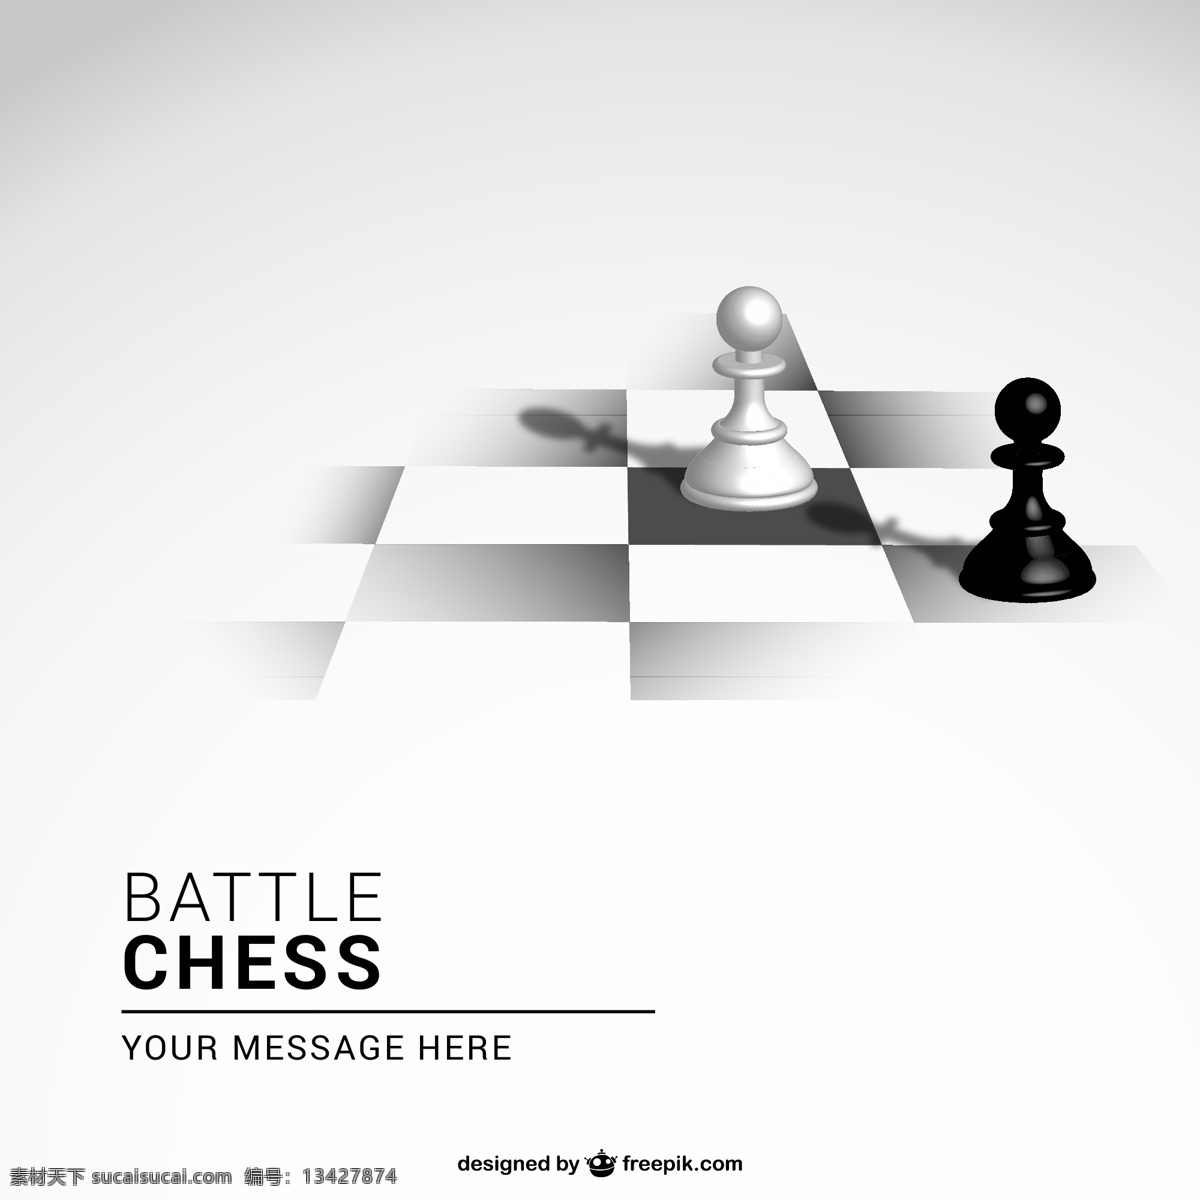 黑白 国际象棋 背景 矢量 ai格式 棋盘 棋子 矢量图 阴影 含 预览 图 其他矢量图